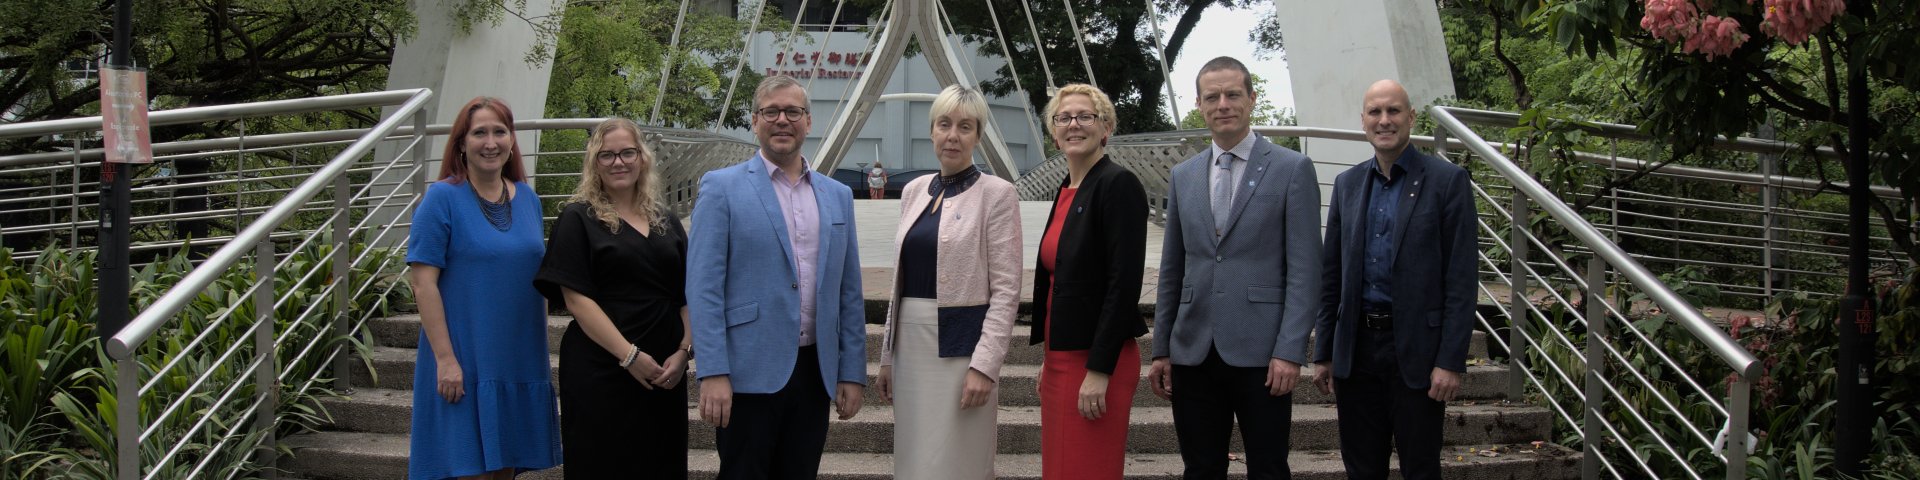 Tartu Ülikooli delegatsioon Eesti Singapuri saatkonna töötajatega